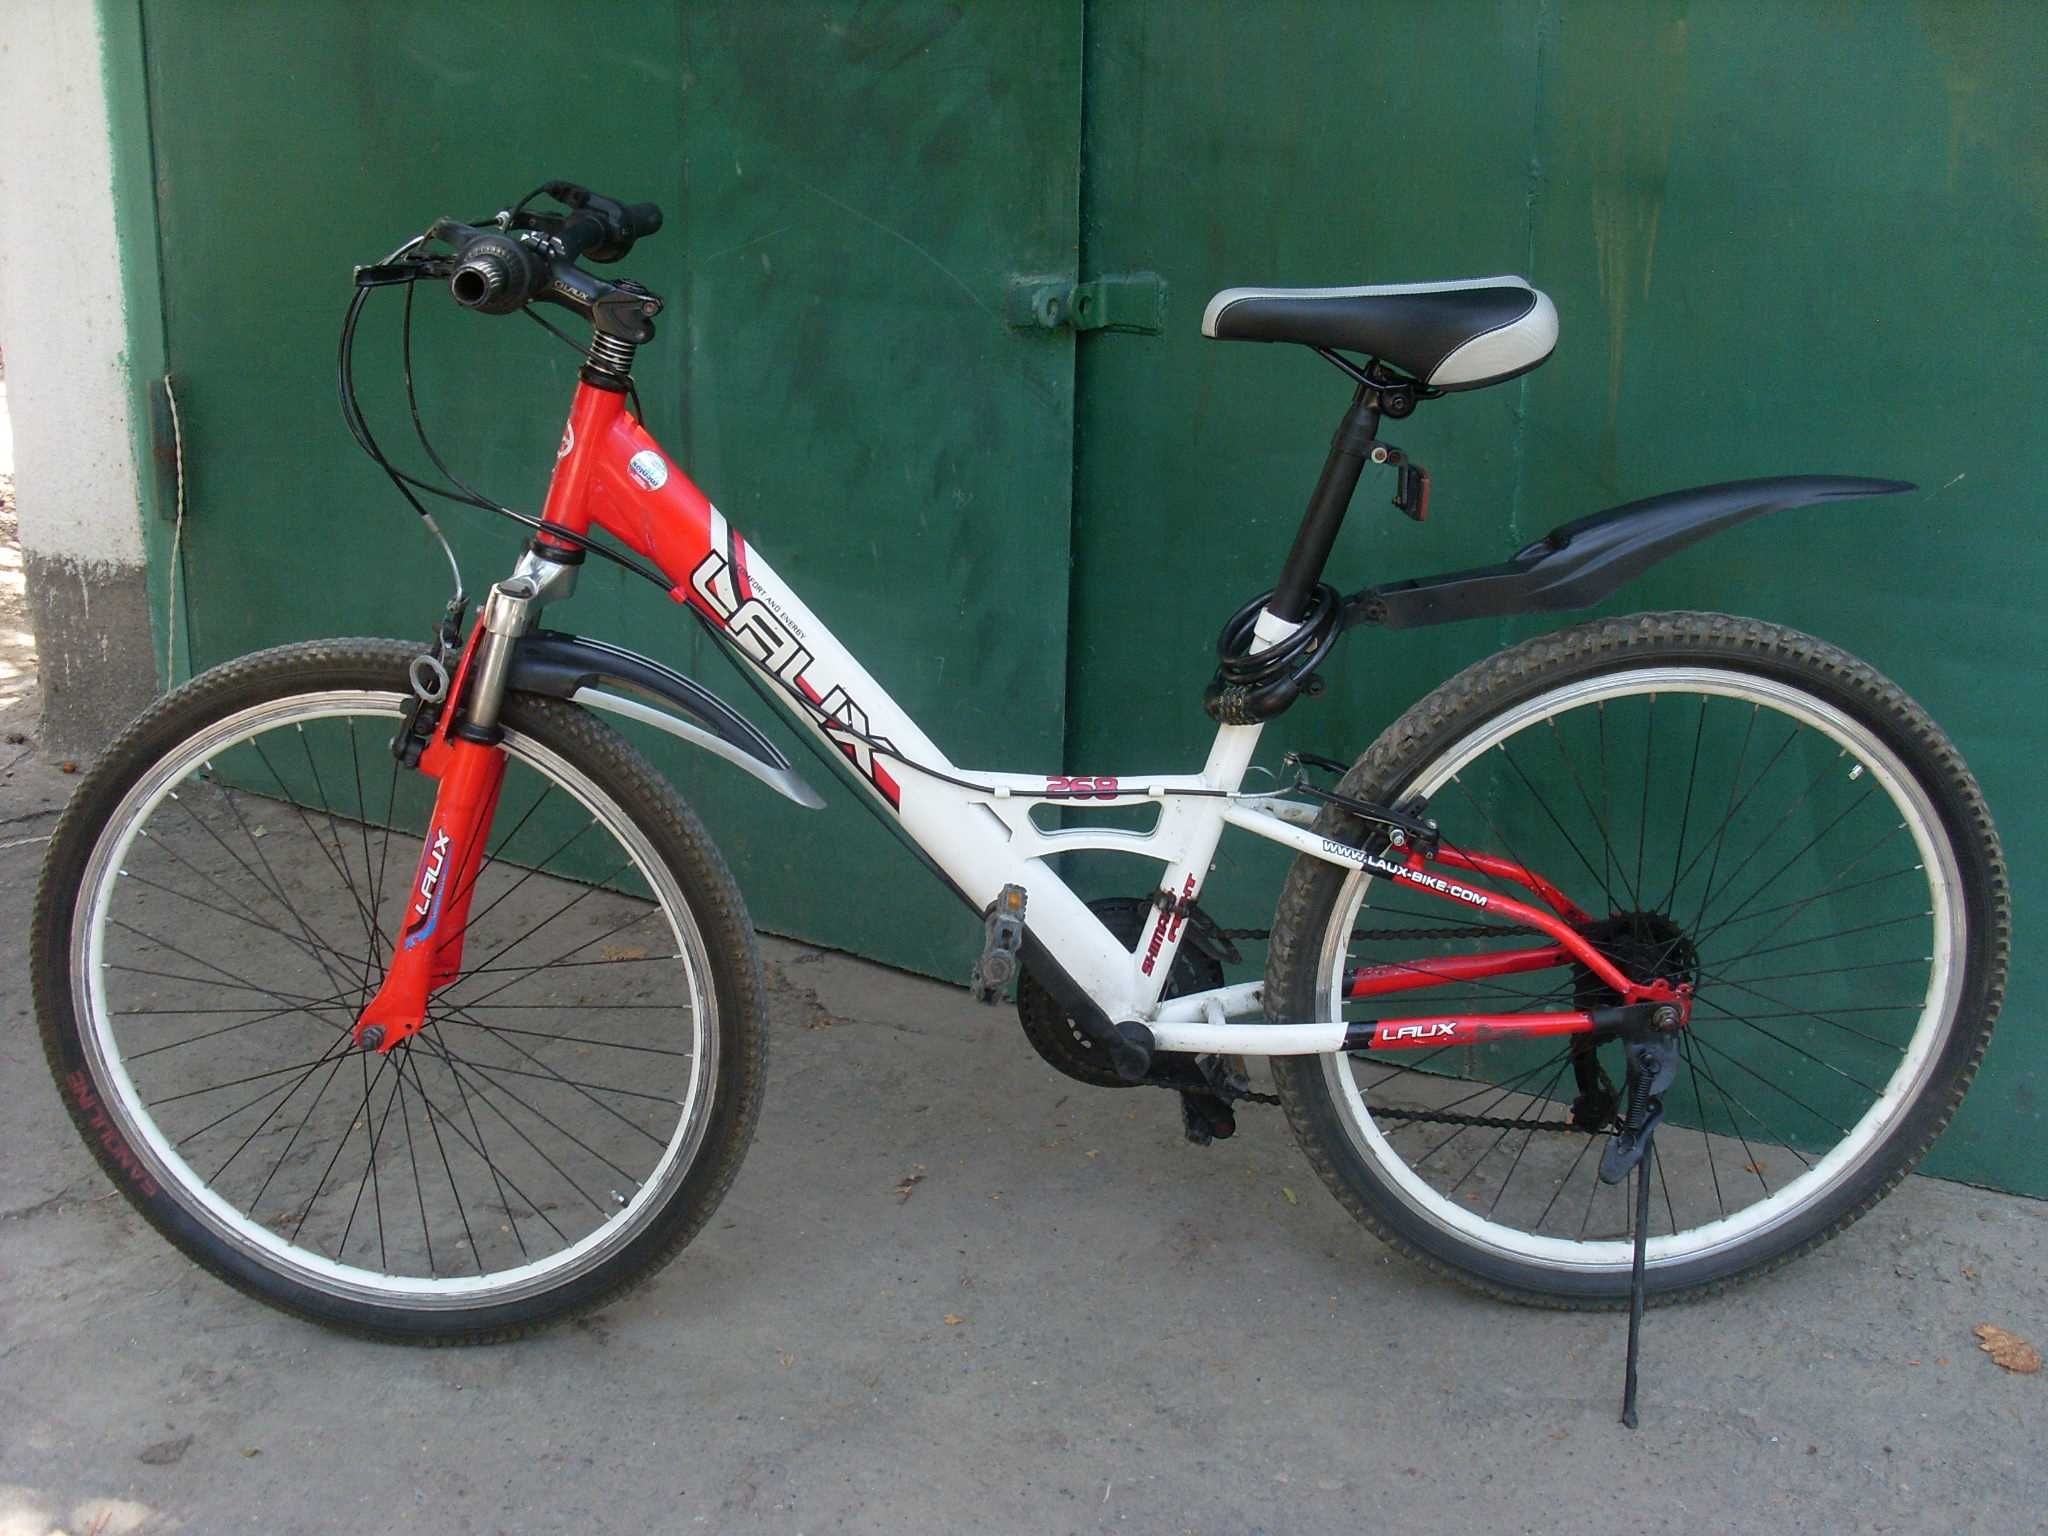 Спортивный велосипед фирмы "Шимано"